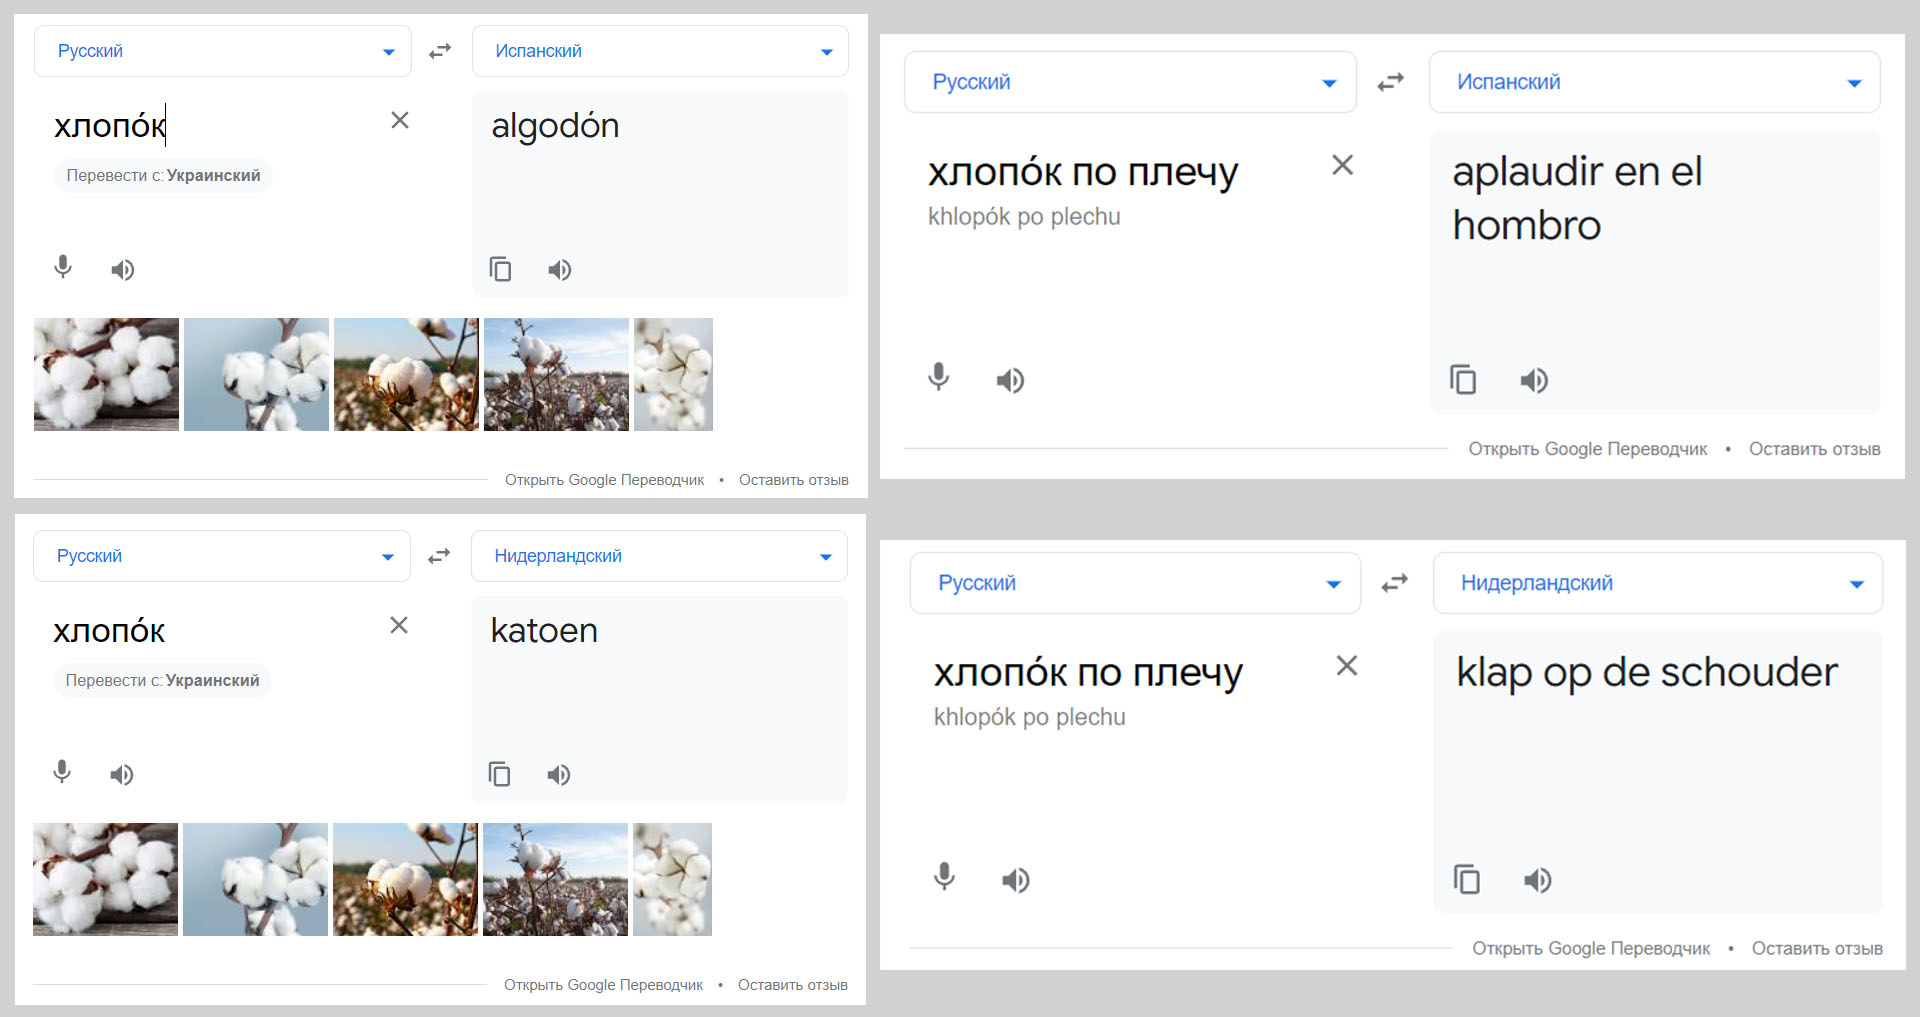 Скриншоты Гугл переводчика с переводом слова «Хлопок» на испанский и голландский.